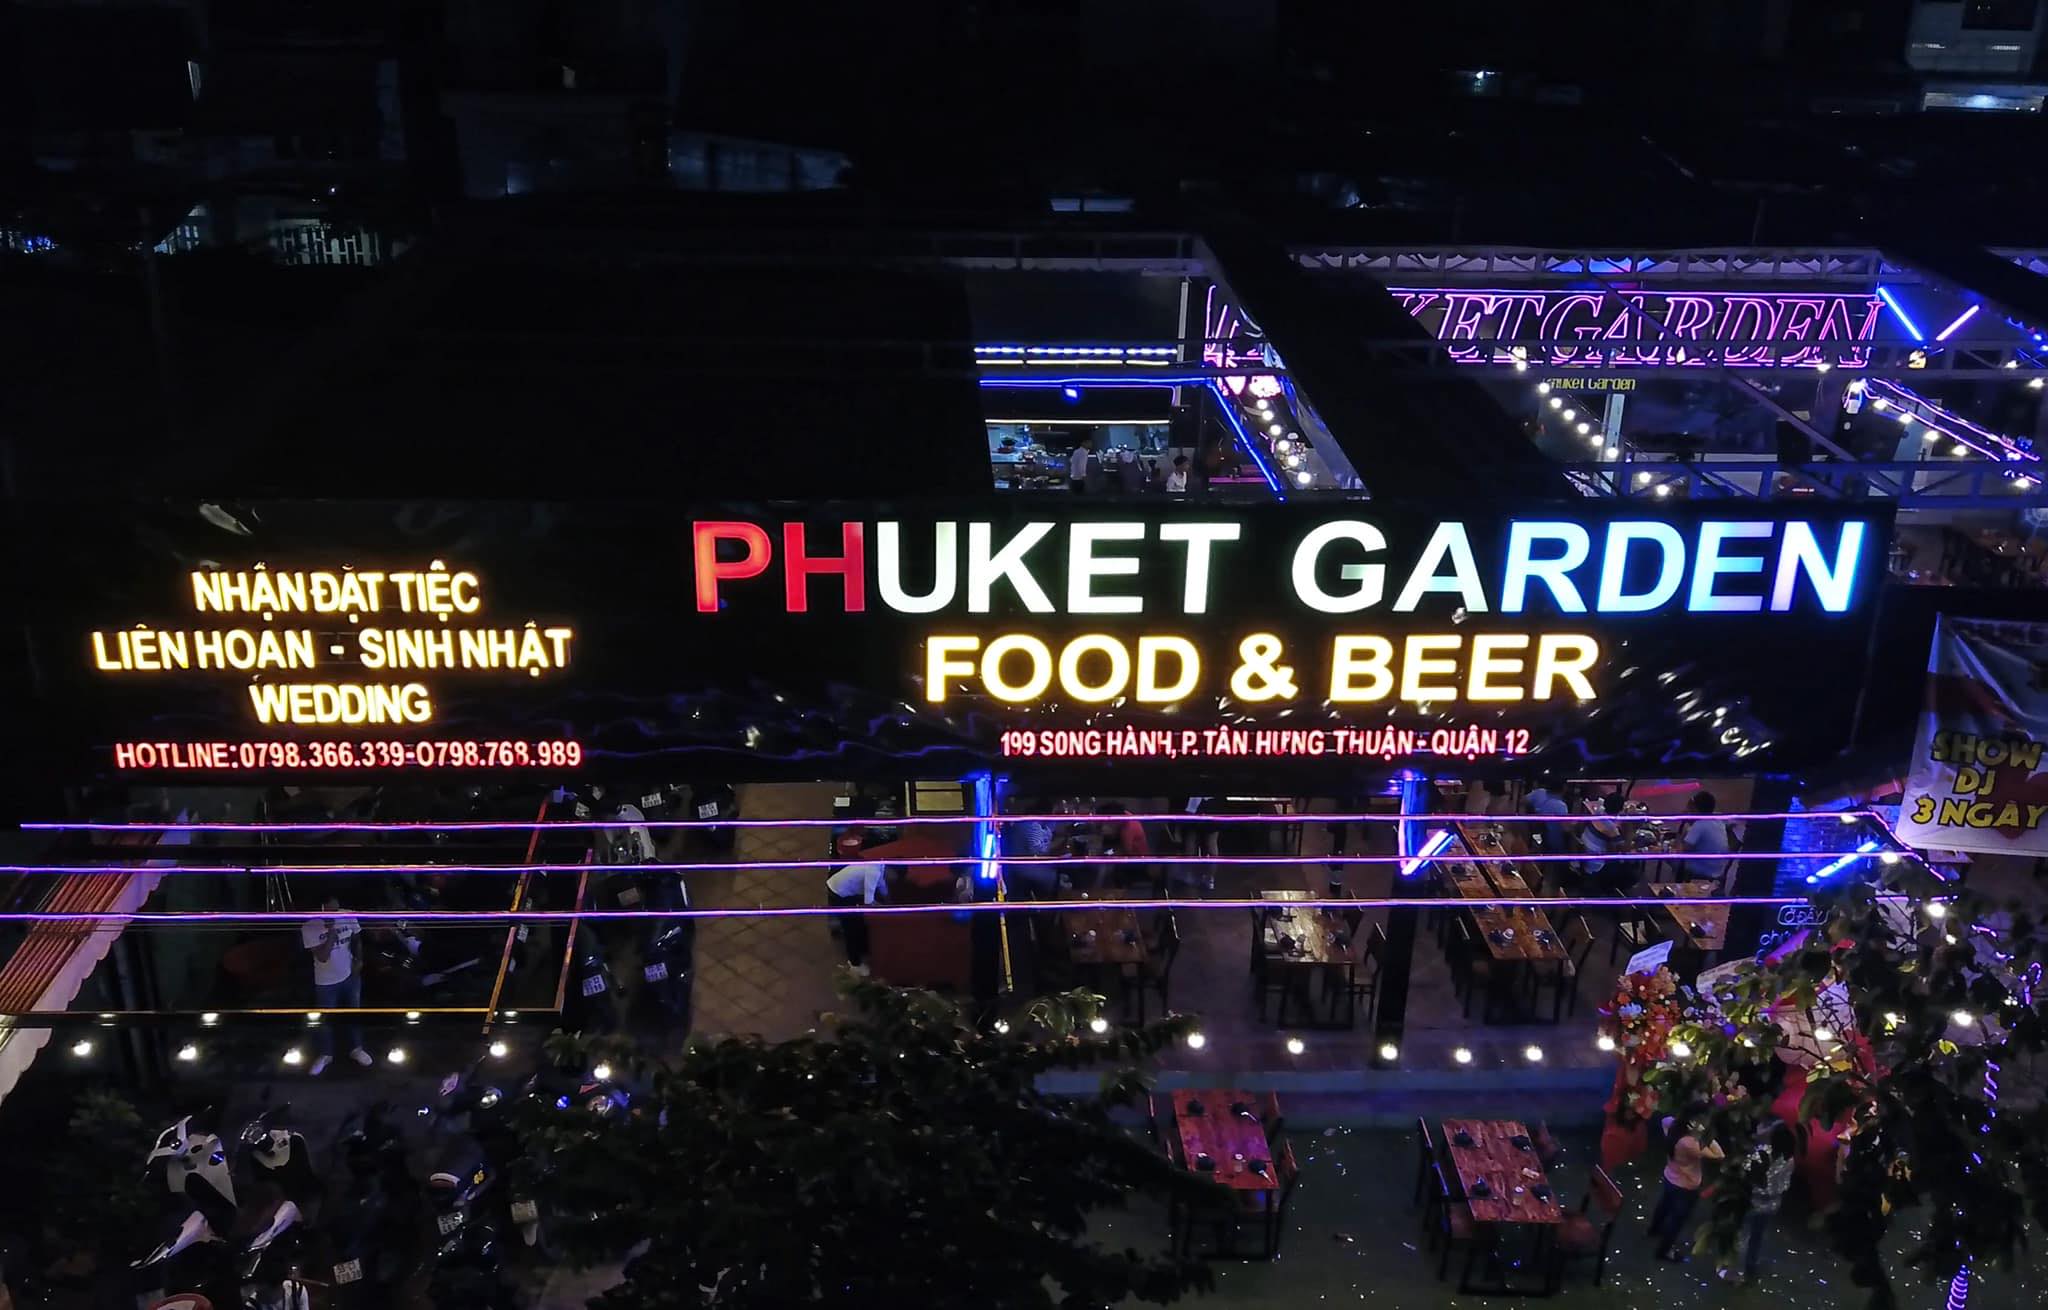 Phuket Garden Food & Beer - Thiên Đường Ẩm Thực và Giải Trí Tại Quận 12